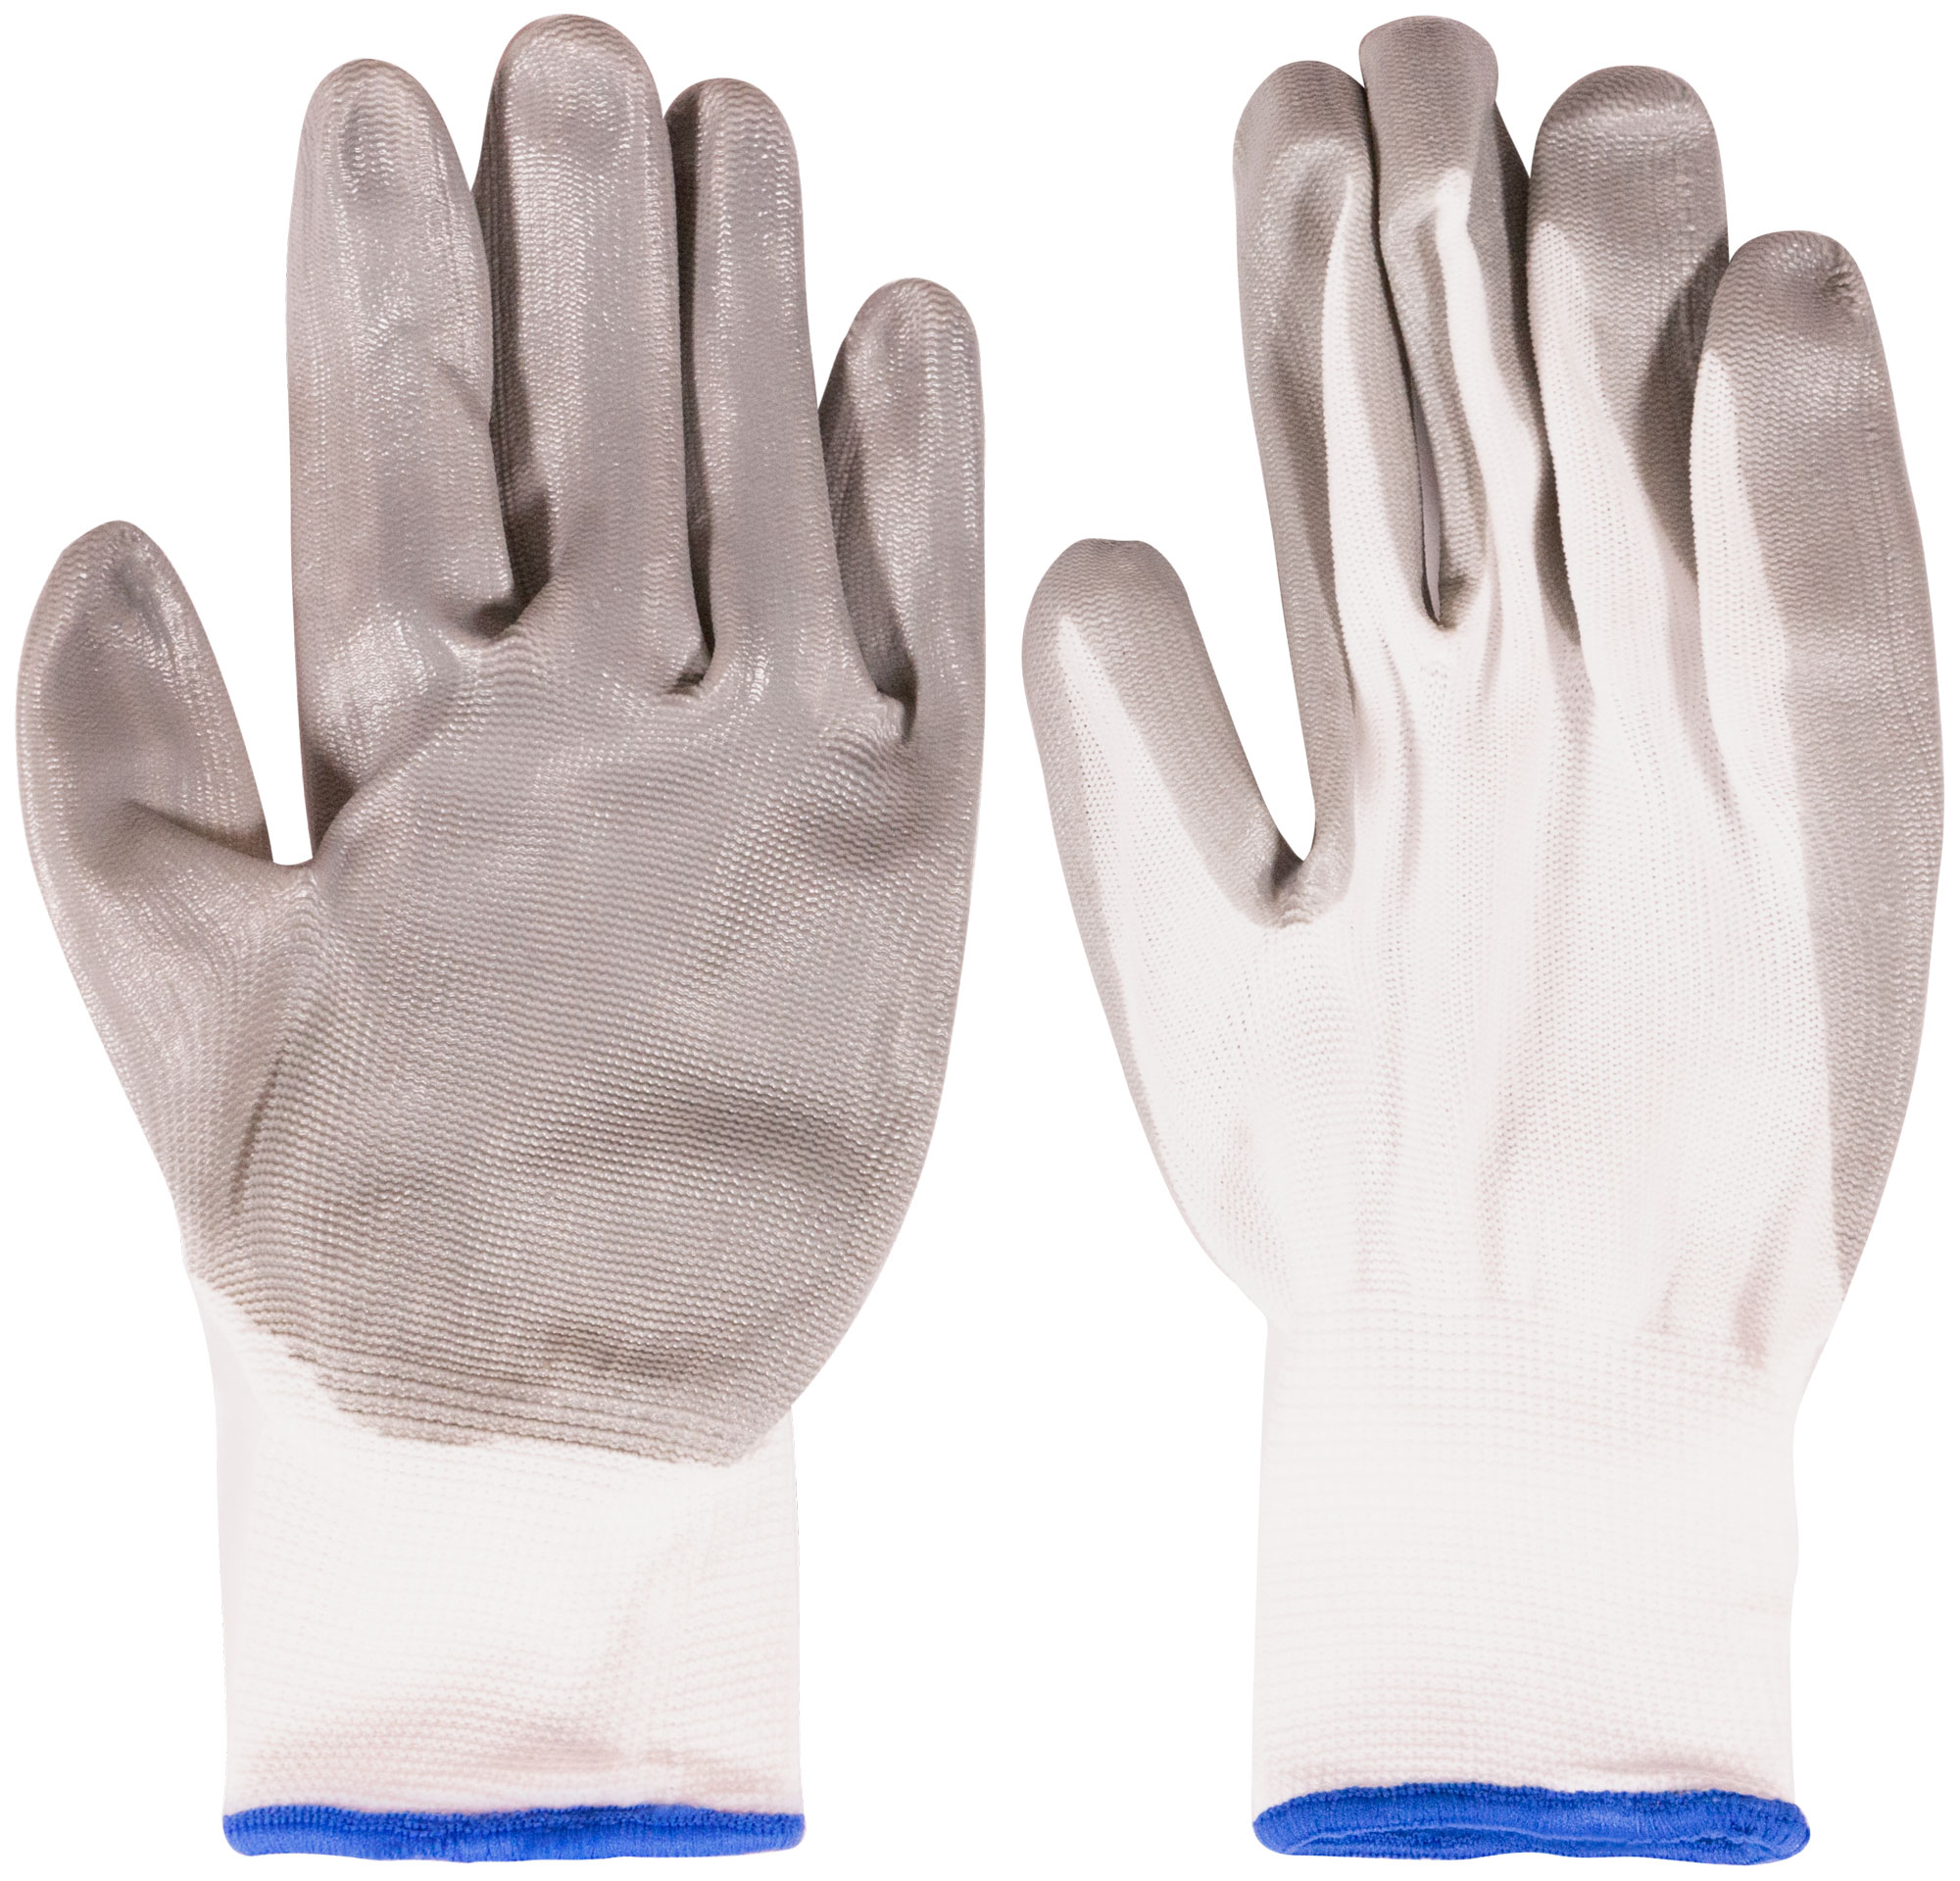 Перчатки нейлоновые MOS с нитриловым покрытием 10 12471М 10 пар защитные рабочие перчатки из полиуретана с нитриловым покрытием